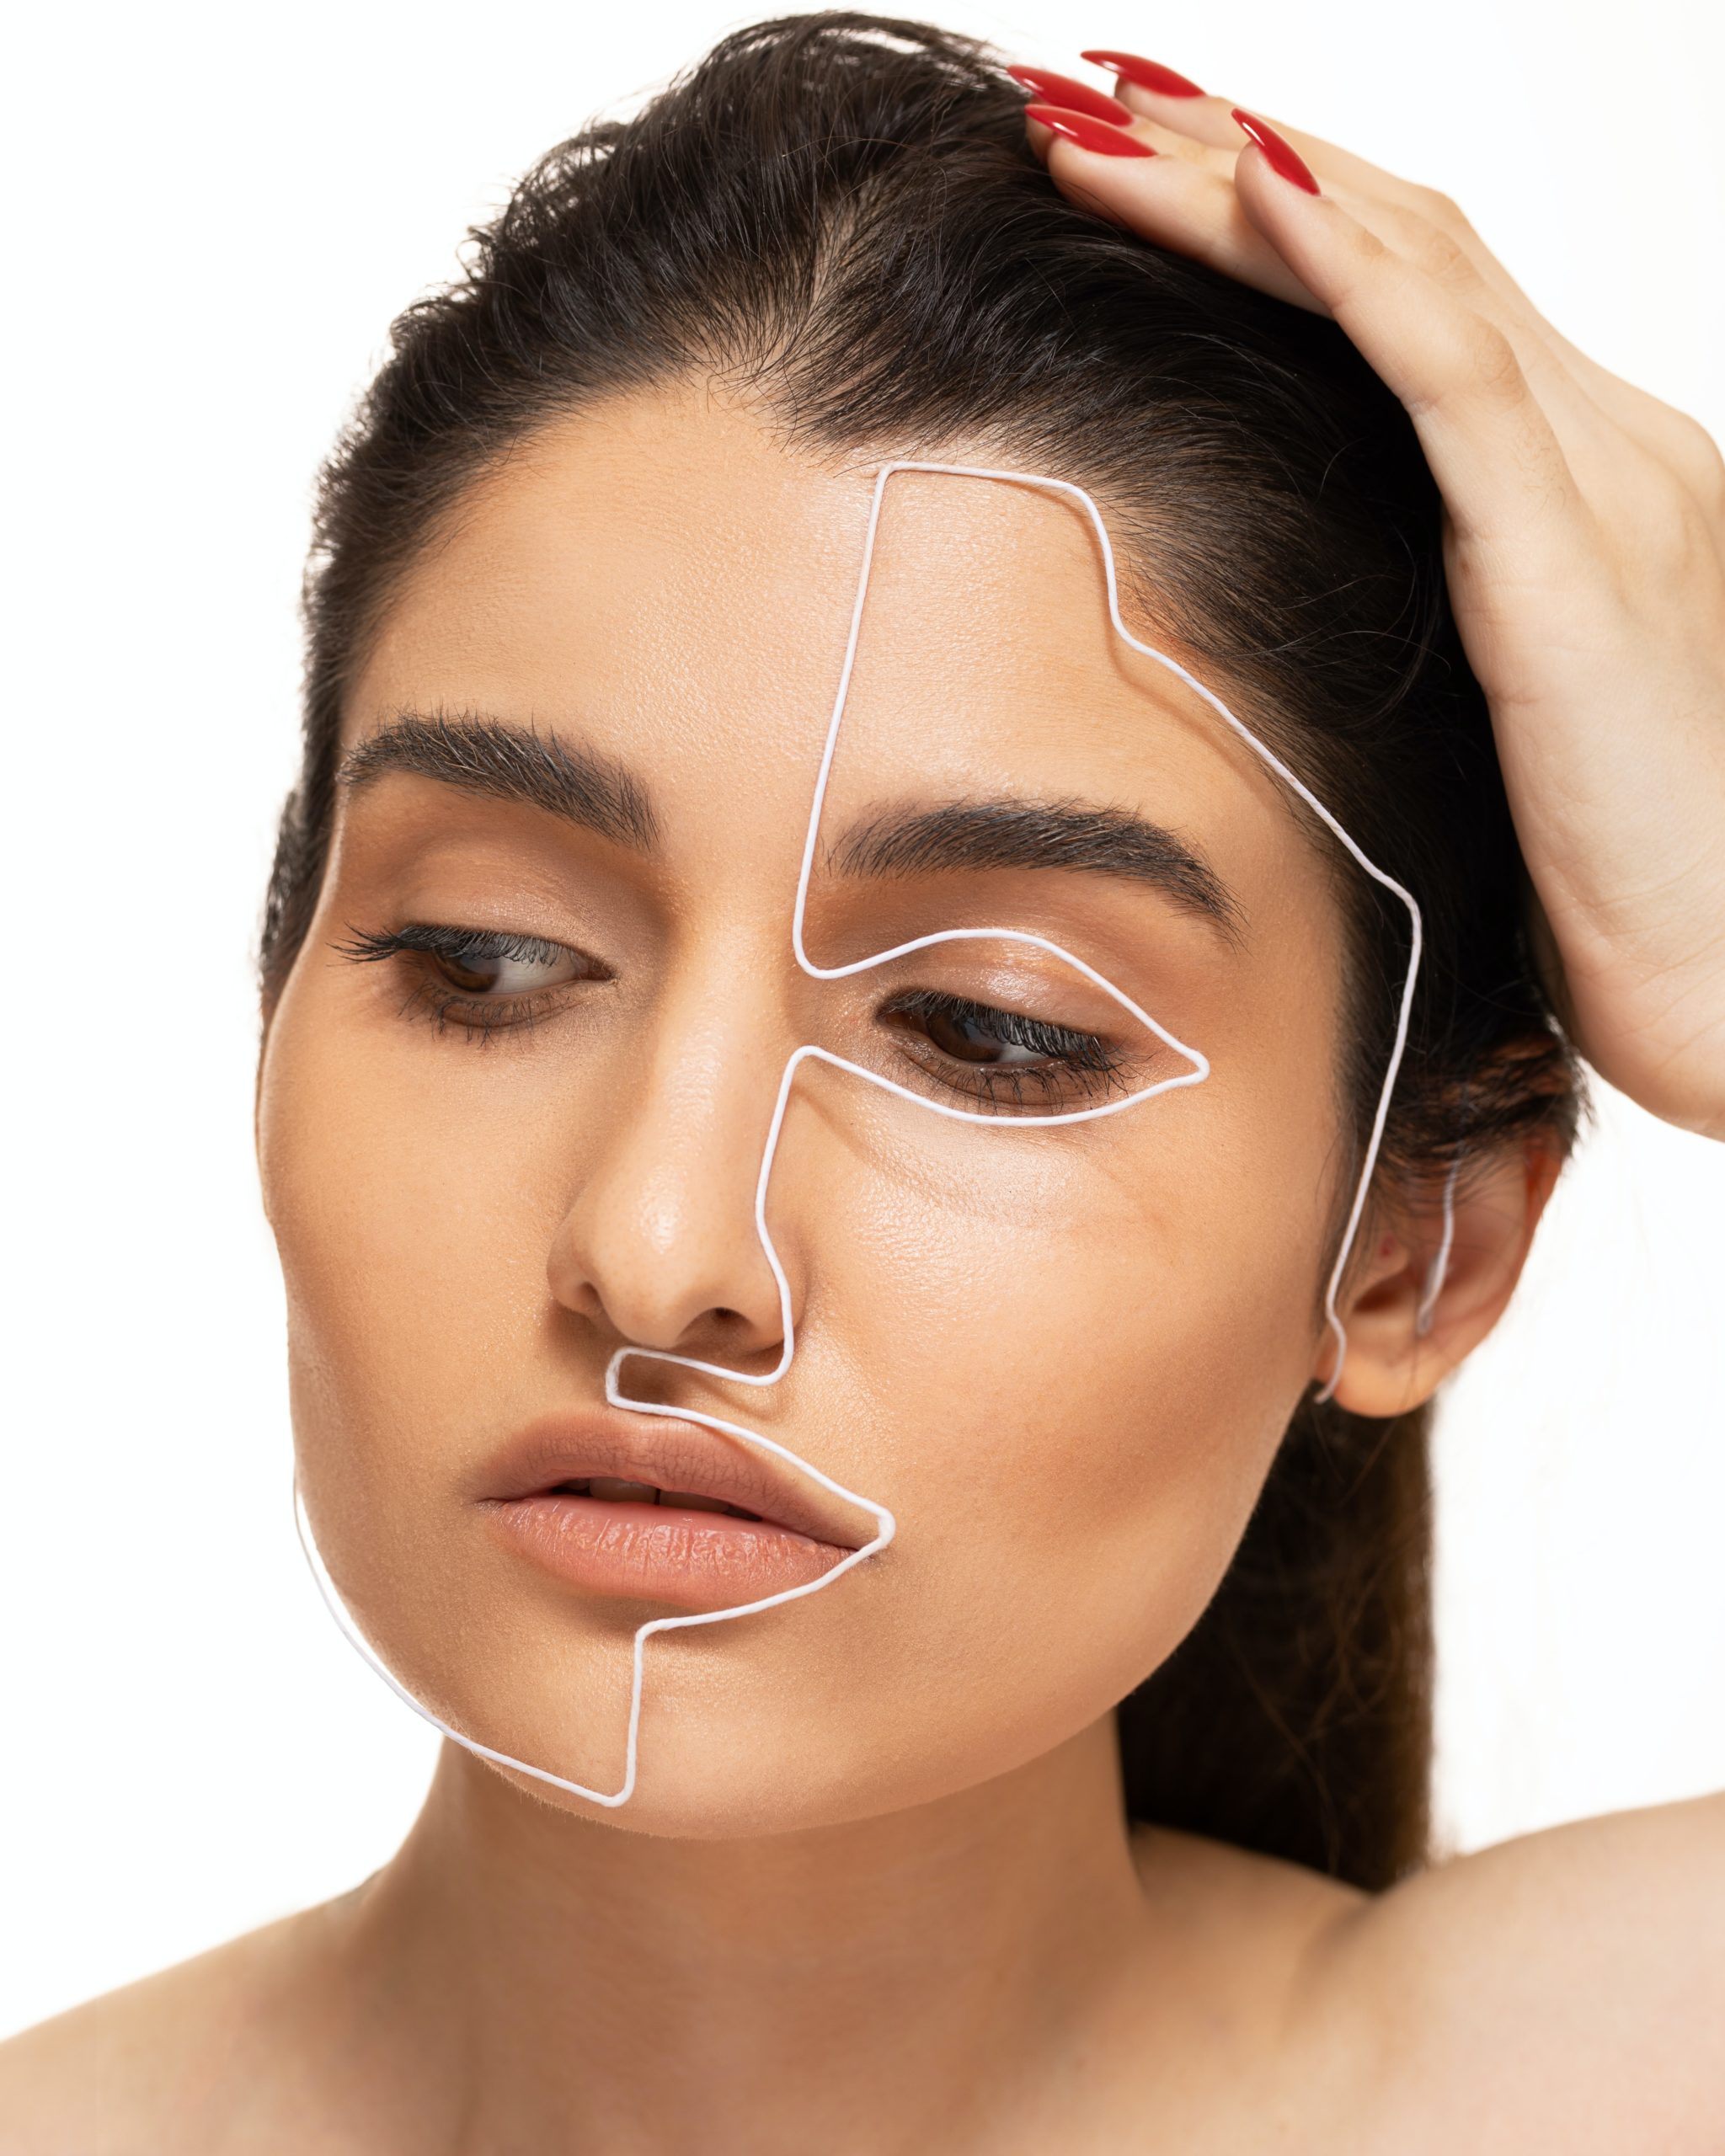 Tratament pentru lifting facial fără intervenție chirurgicală | Med Turkish